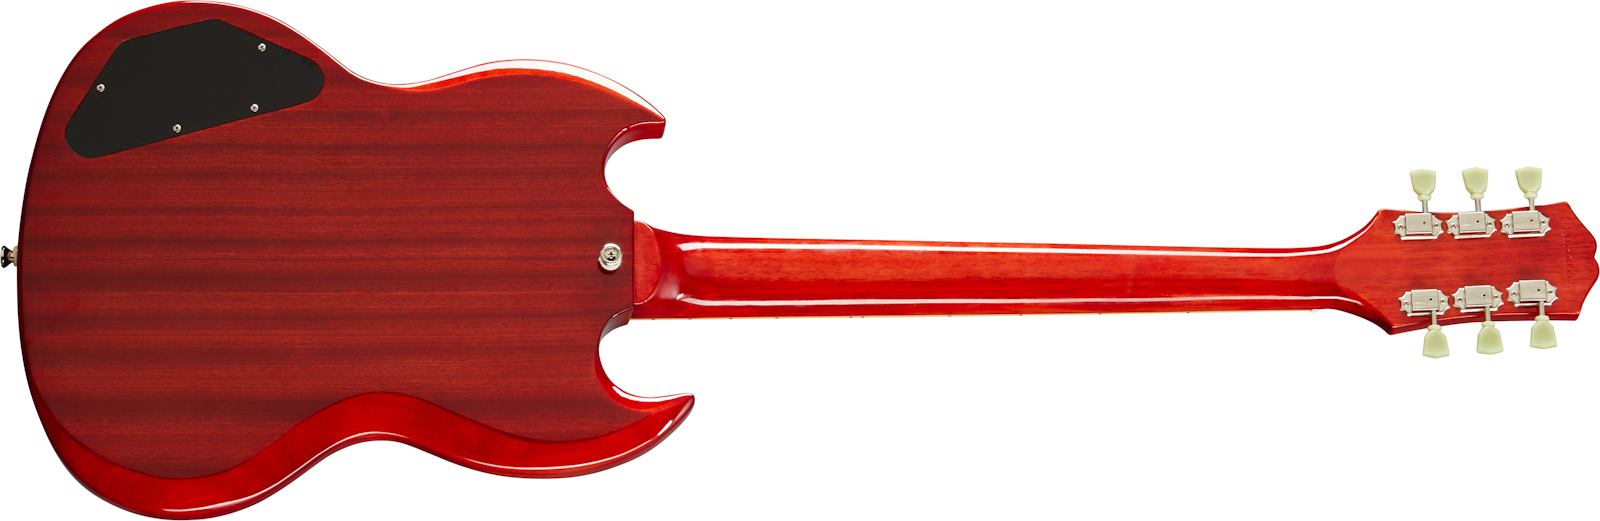 Epiphone Sg Standard 1961 2h Ht Lau - Vintage Cherry - Guitarra eléctrica de doble corte - Variation 1